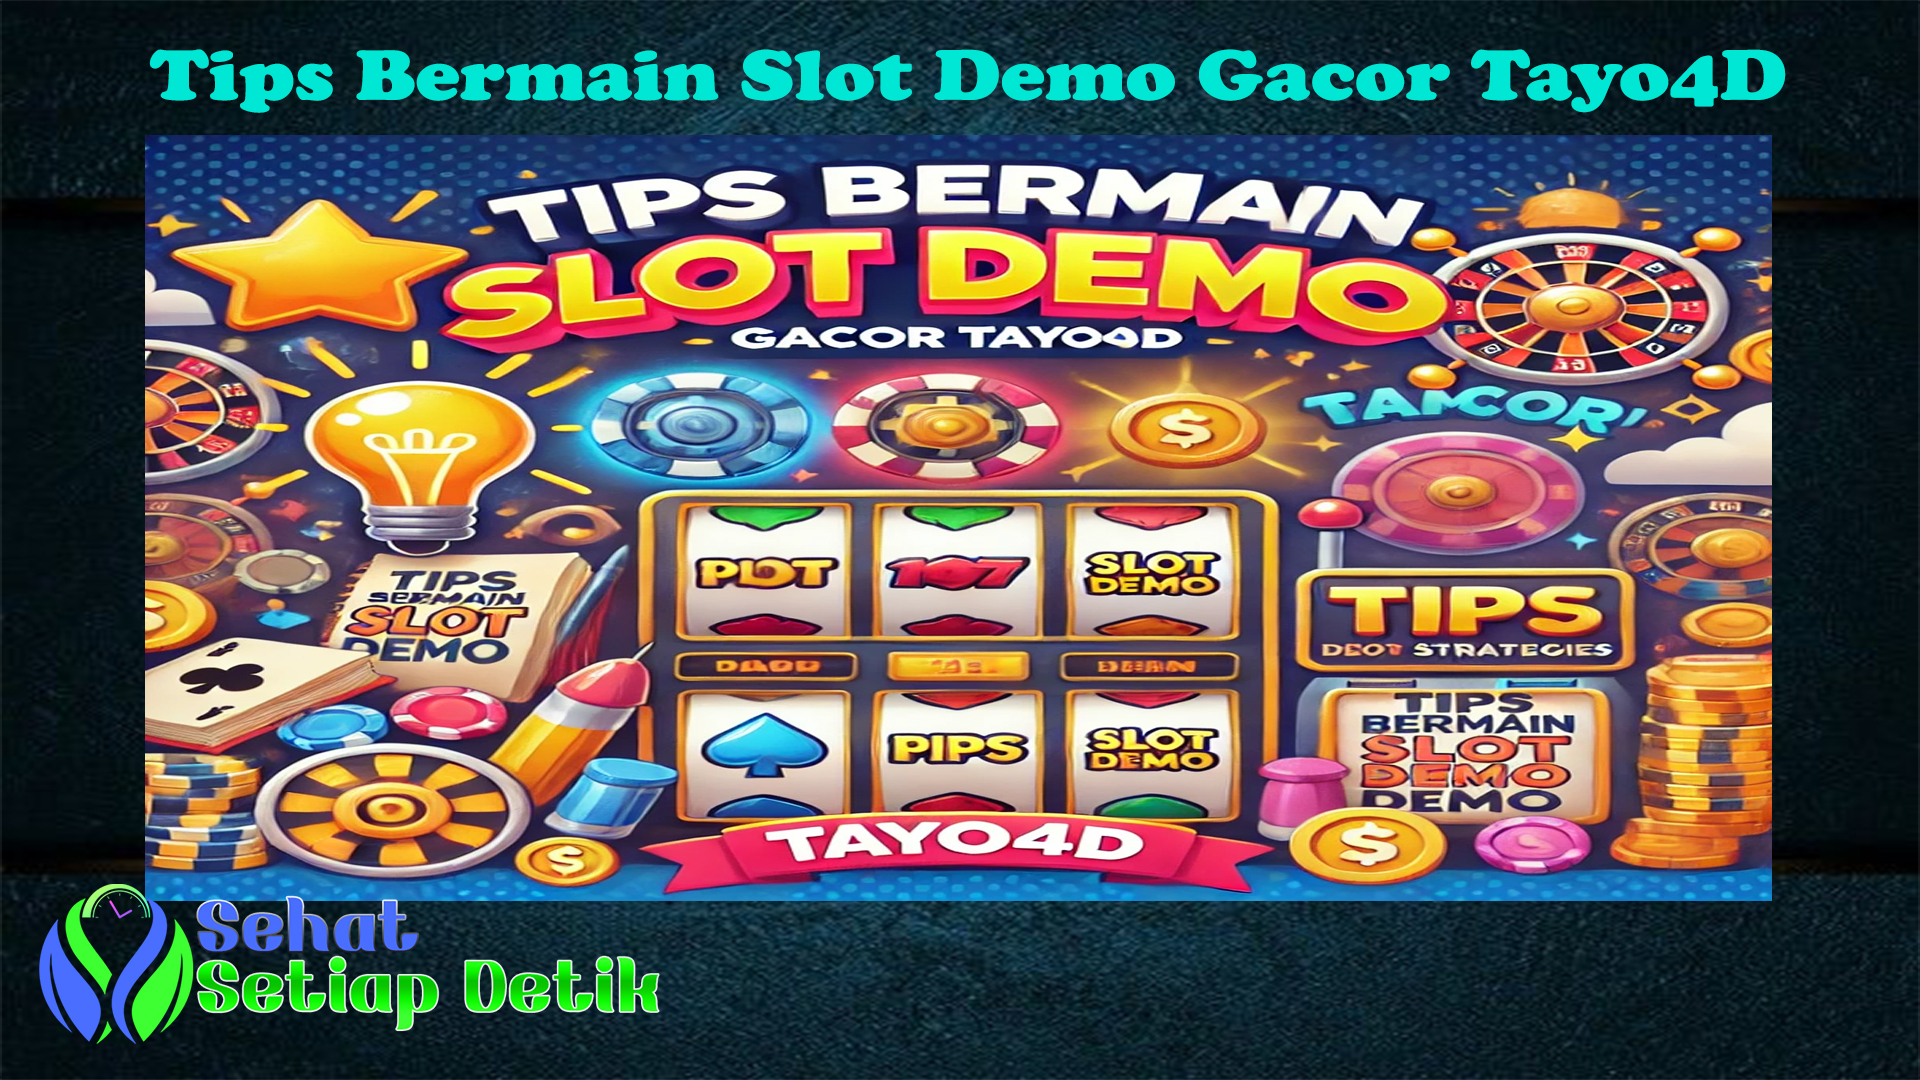 Tips Bermain Slot Demo Gacor Tayo4D